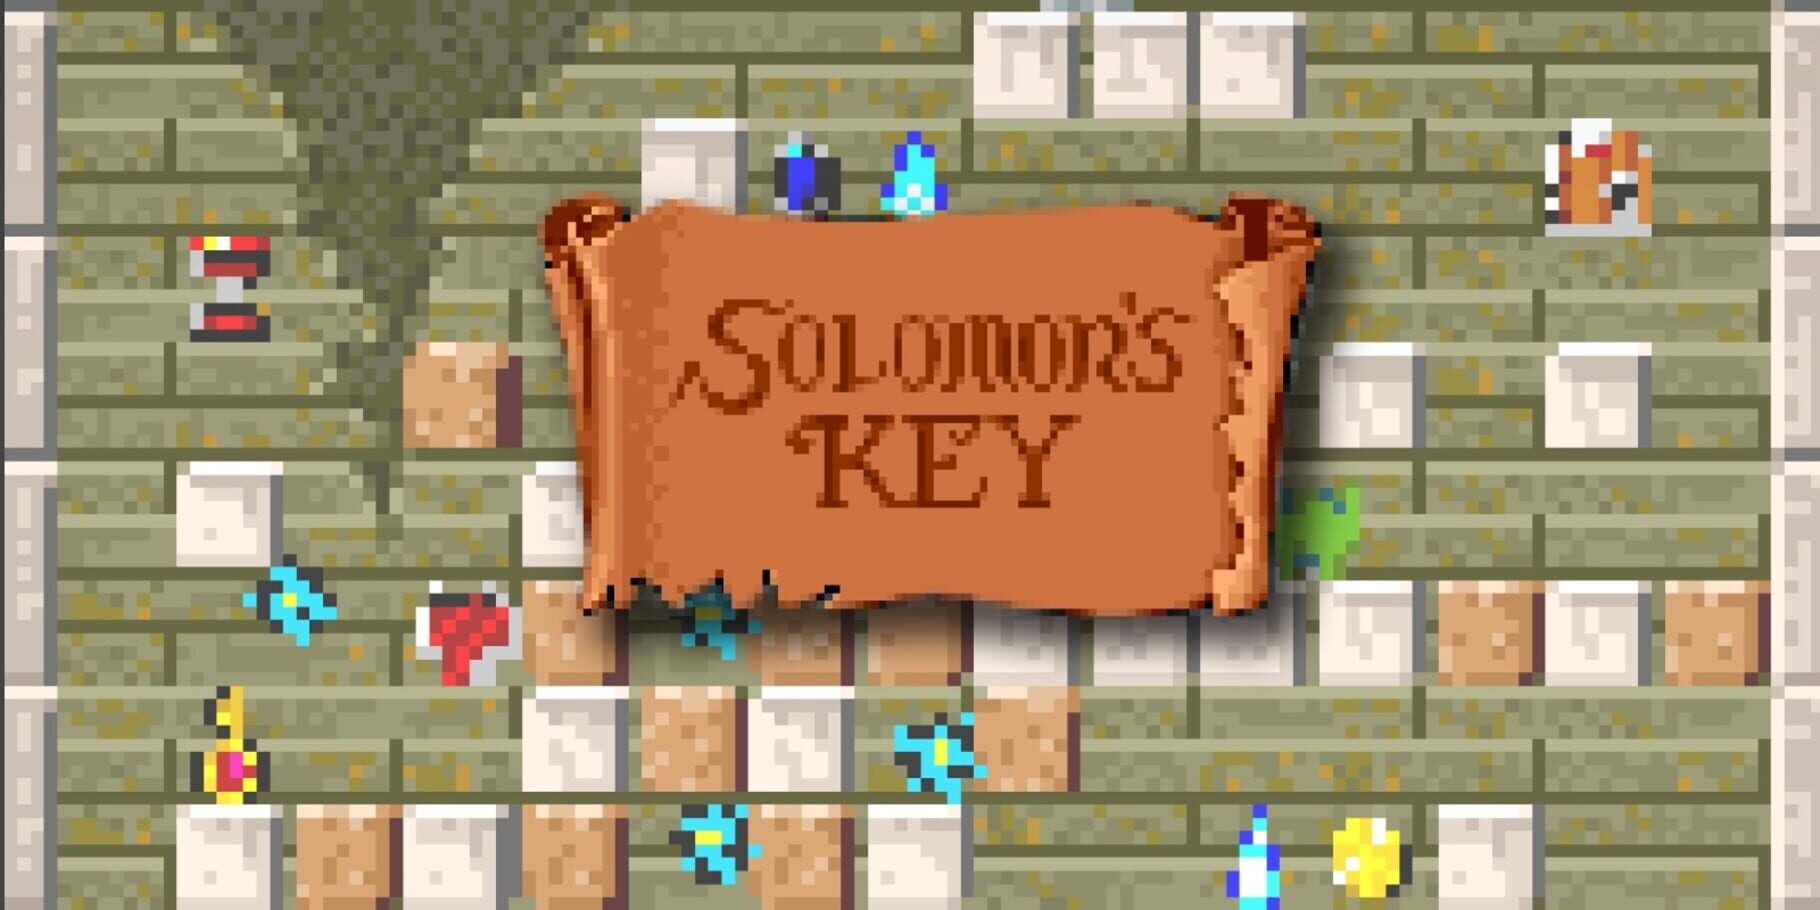 Arte - Solomon's Key